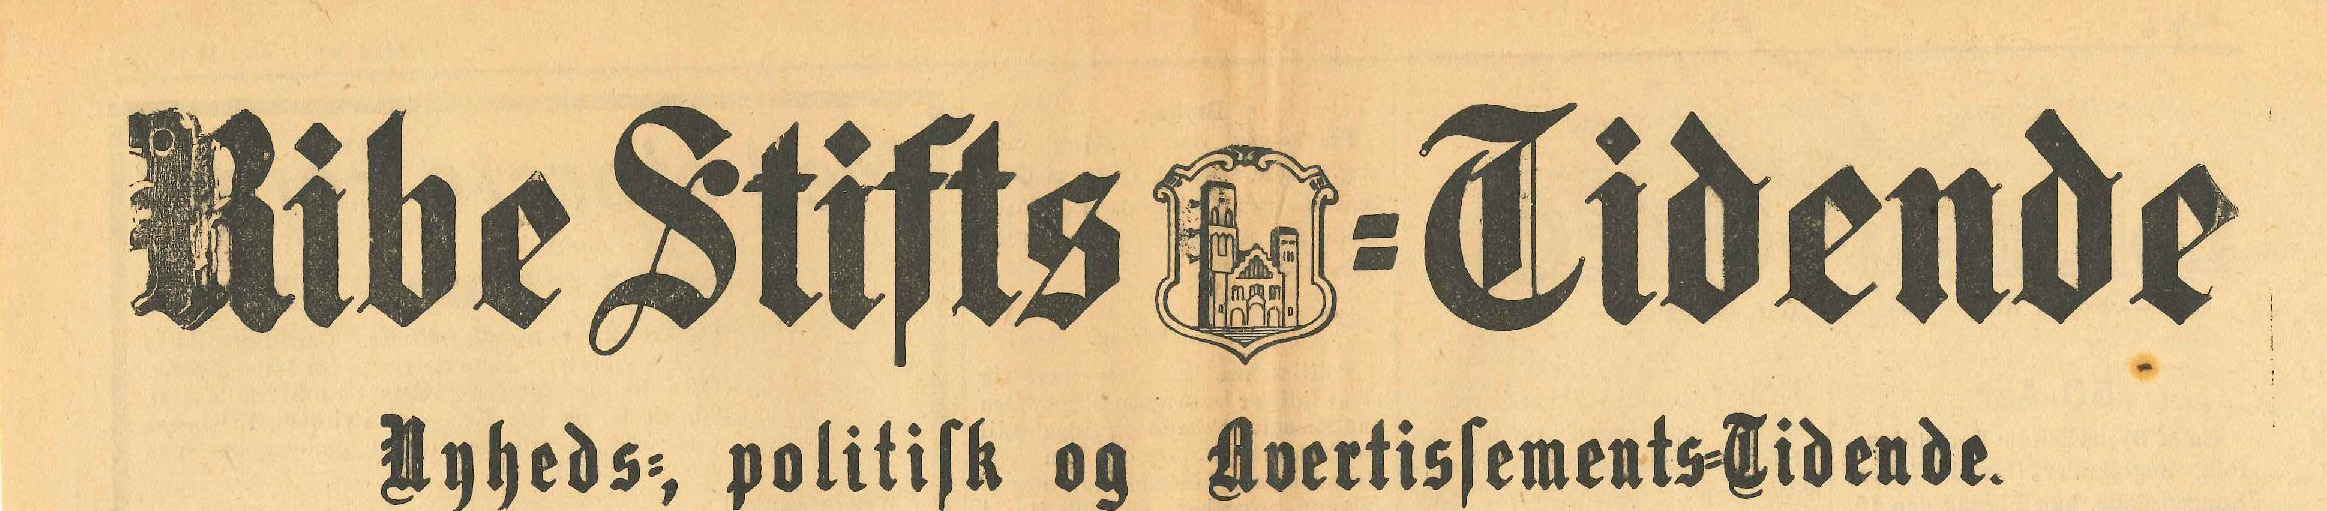 5. juli 1916 – Ribe Stiftstidende: Ferieophold i Danmark og indsamling af gummisko